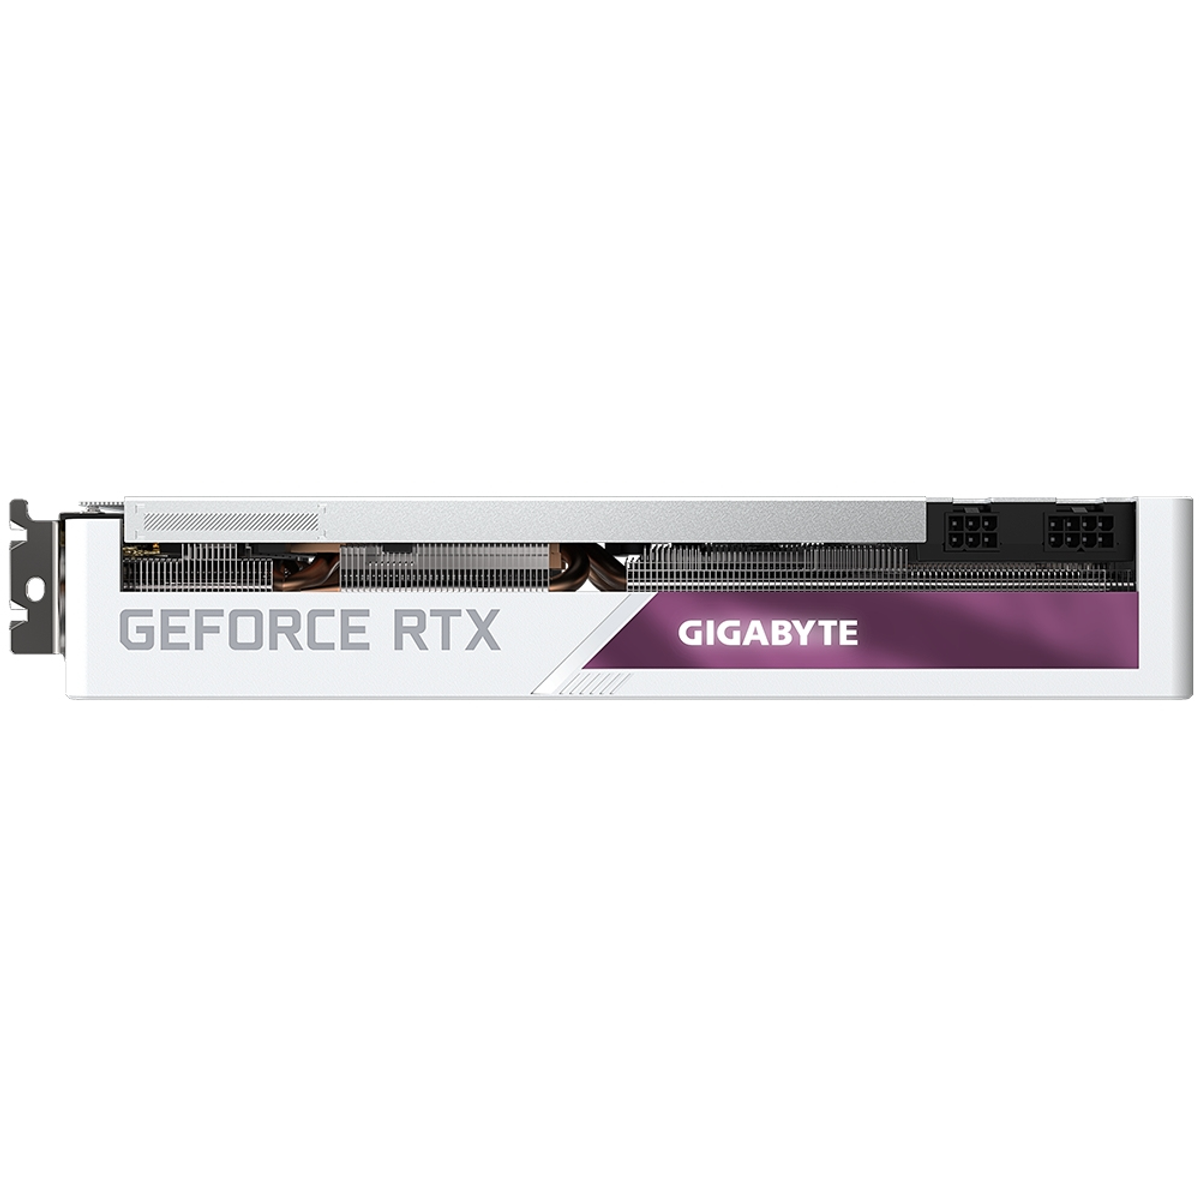 GIGABYTE GeForce RTX Grafikkarte) Vision 3070 (NVIDIA, OC